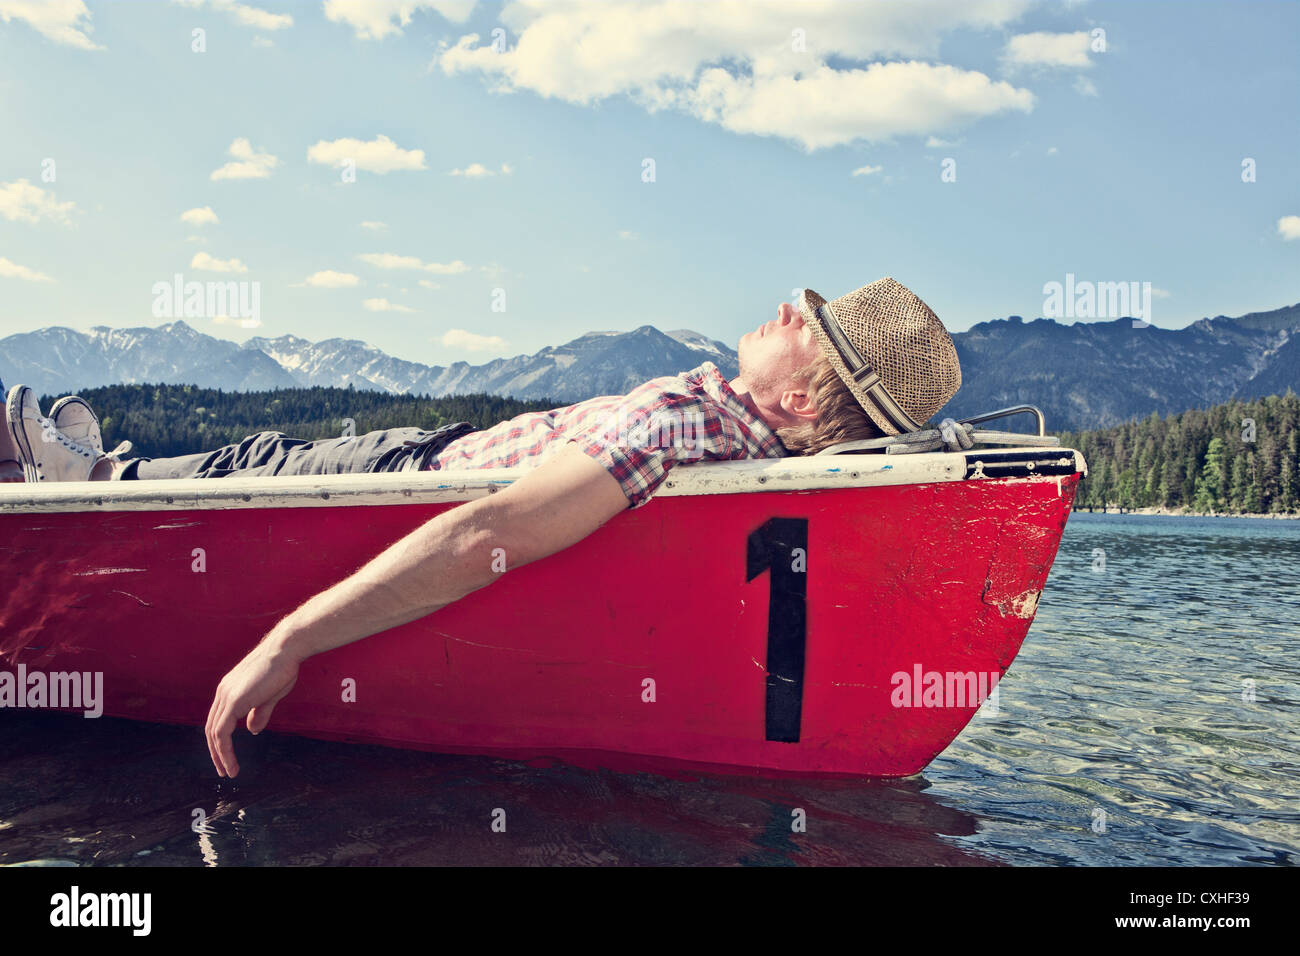 Alemania, Baviera, mitad hombre adulto durmiendo en bote a remo Foto de stock